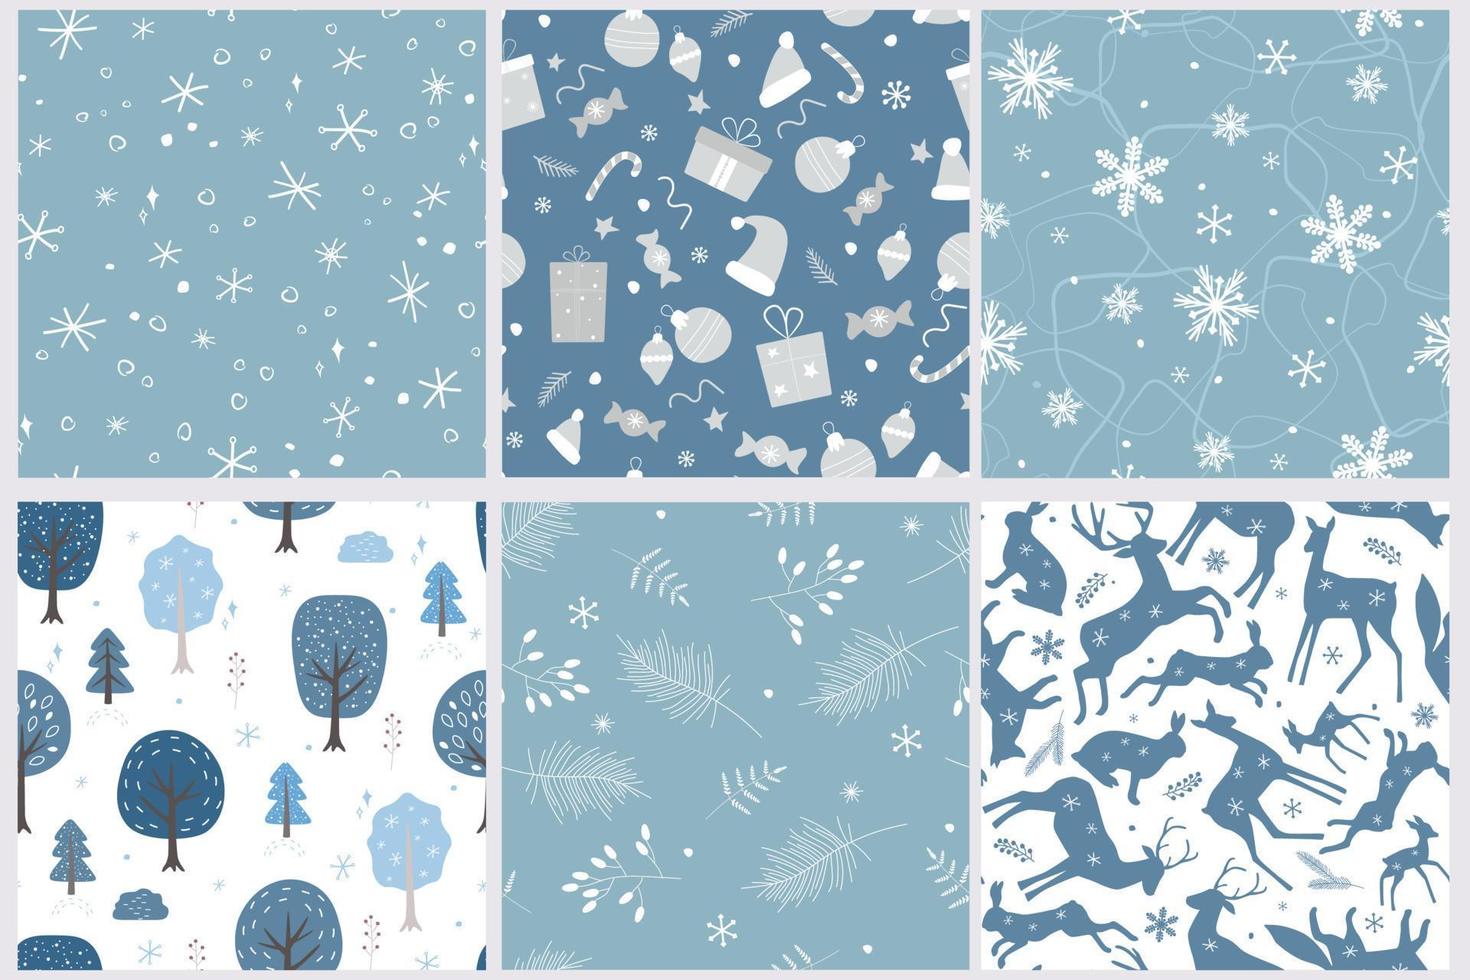 en uppsättning sömlösa mönster med en vinter julprydnad. snöig skog, silhuetter av djur, presenter, snöflingor, godis. vektorgrafik. vektor